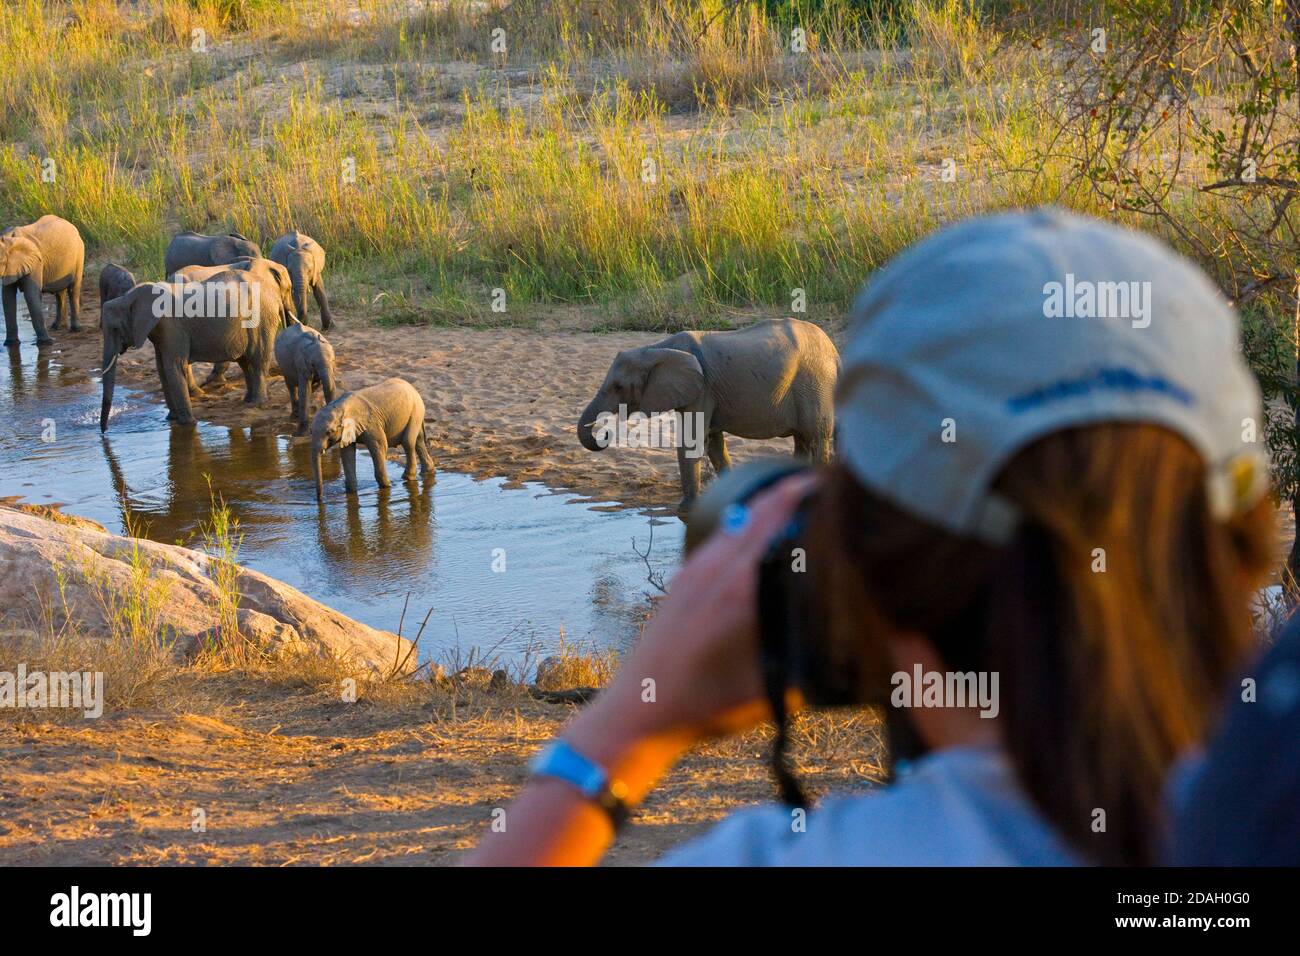 Voyageur photographie troupeau d'éléphants au bord de la rivière, Parc national Kruger, Afrique du Sud Banque D'Images